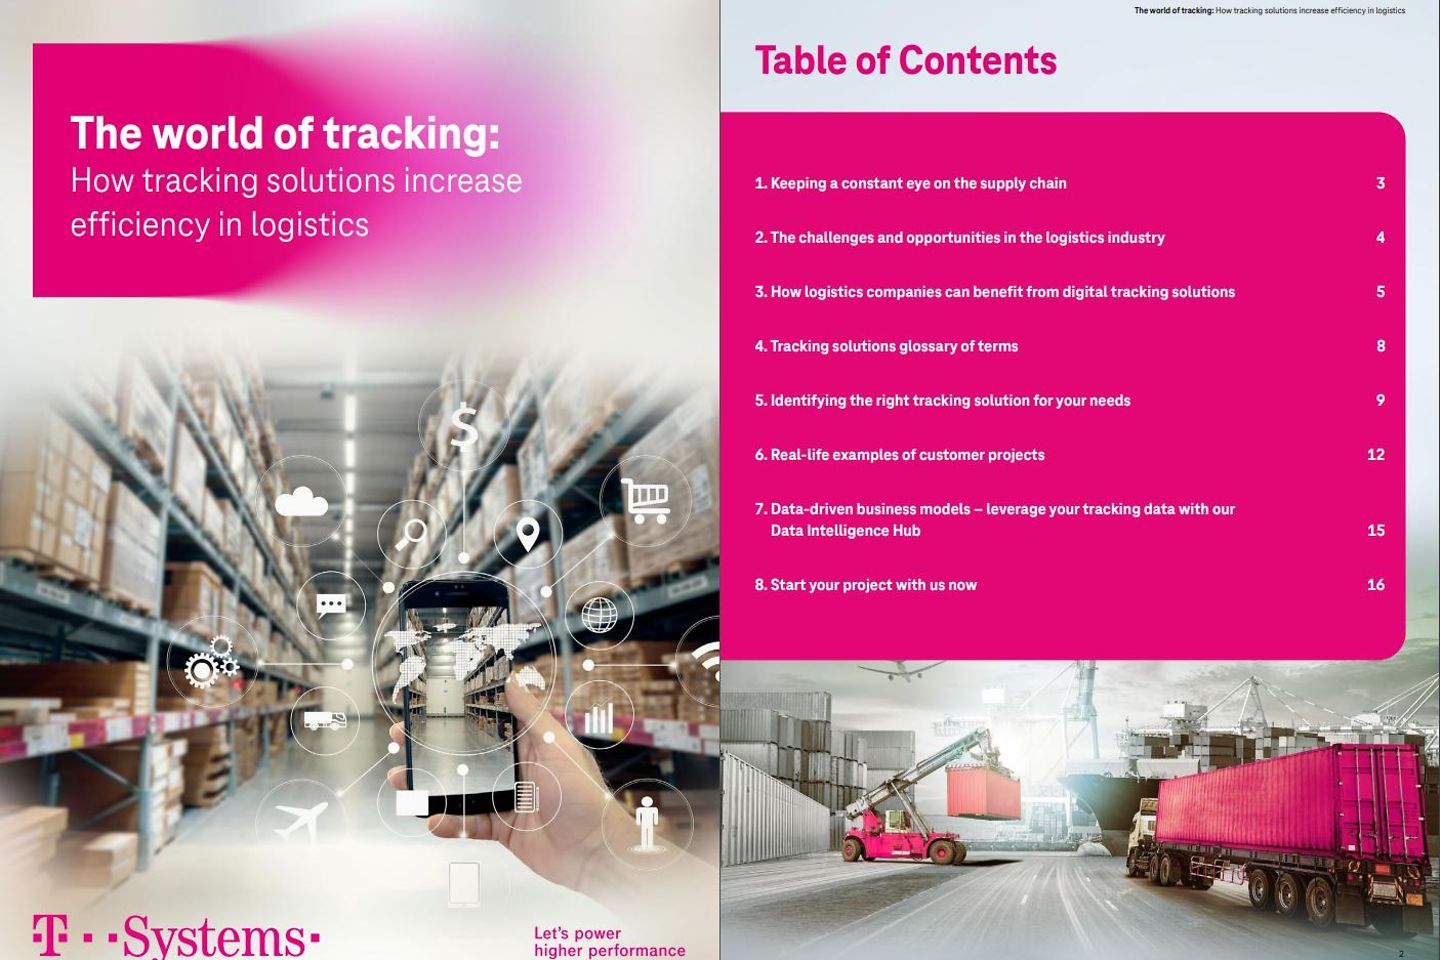 Titel en vervolgpagina van de whitepaper “De wereld van de tracking” als screenshot